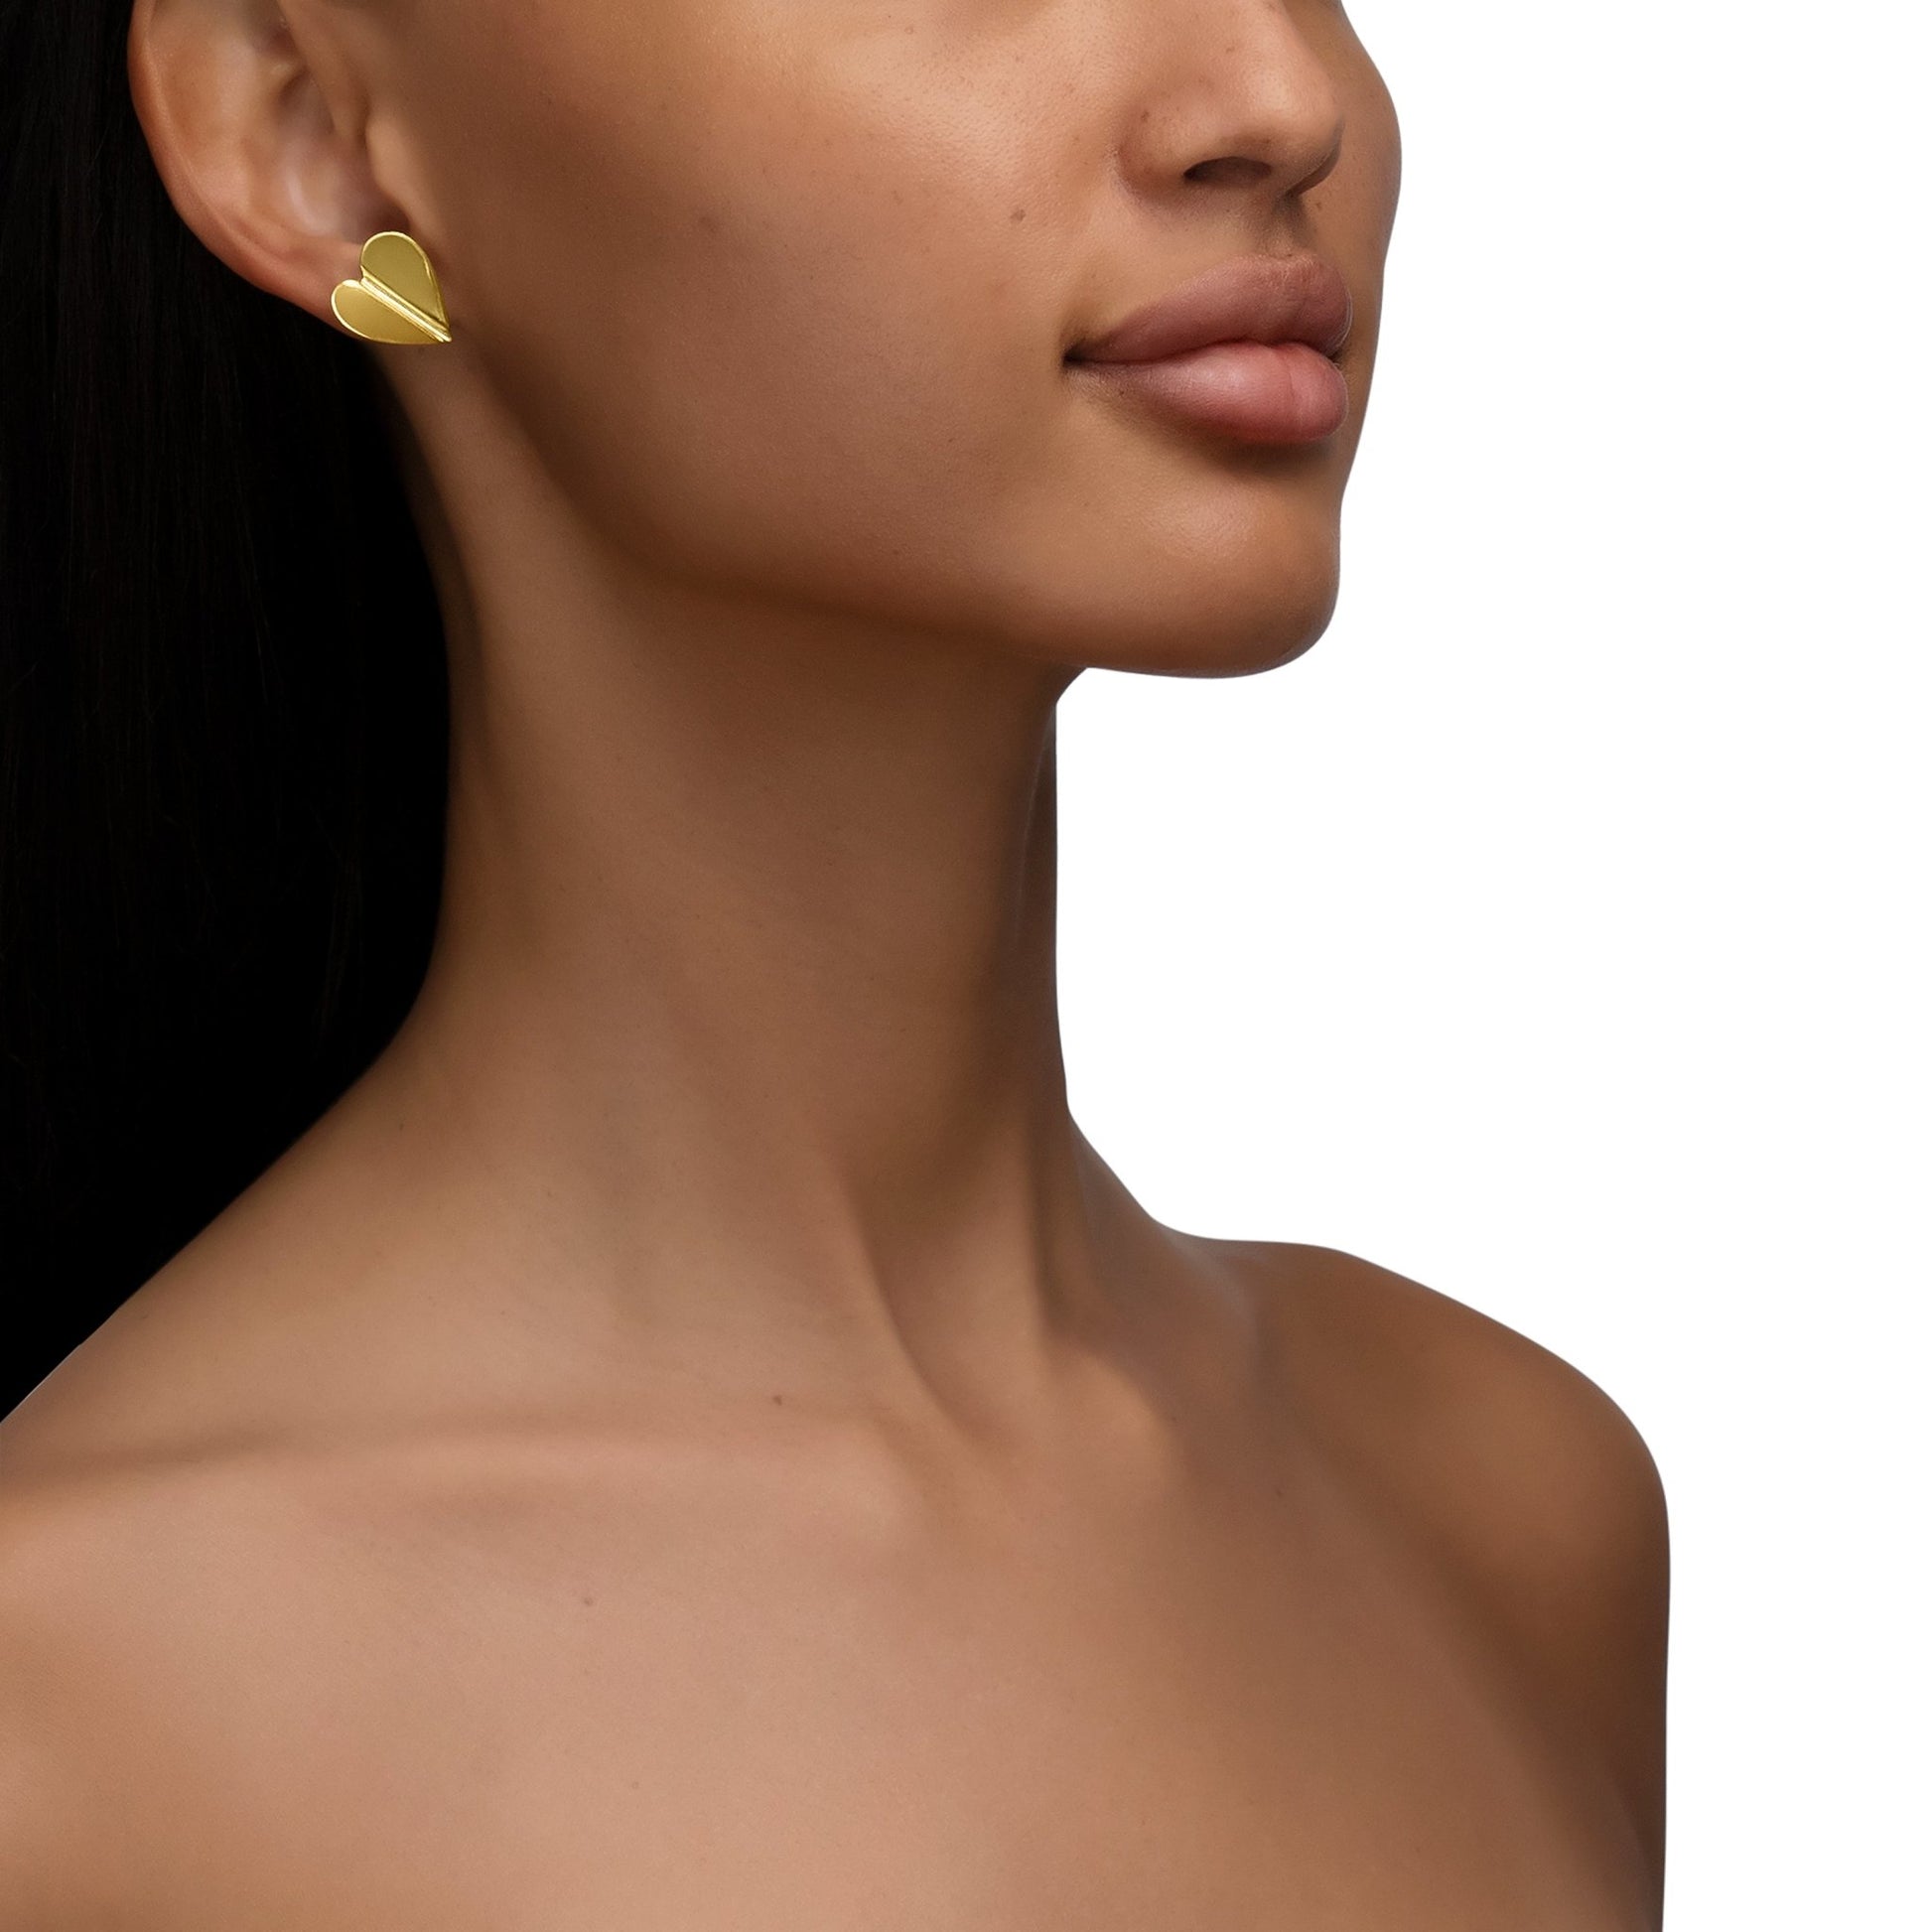 Large White Gold Wings of Love Folded Stud Earrings - Cadar